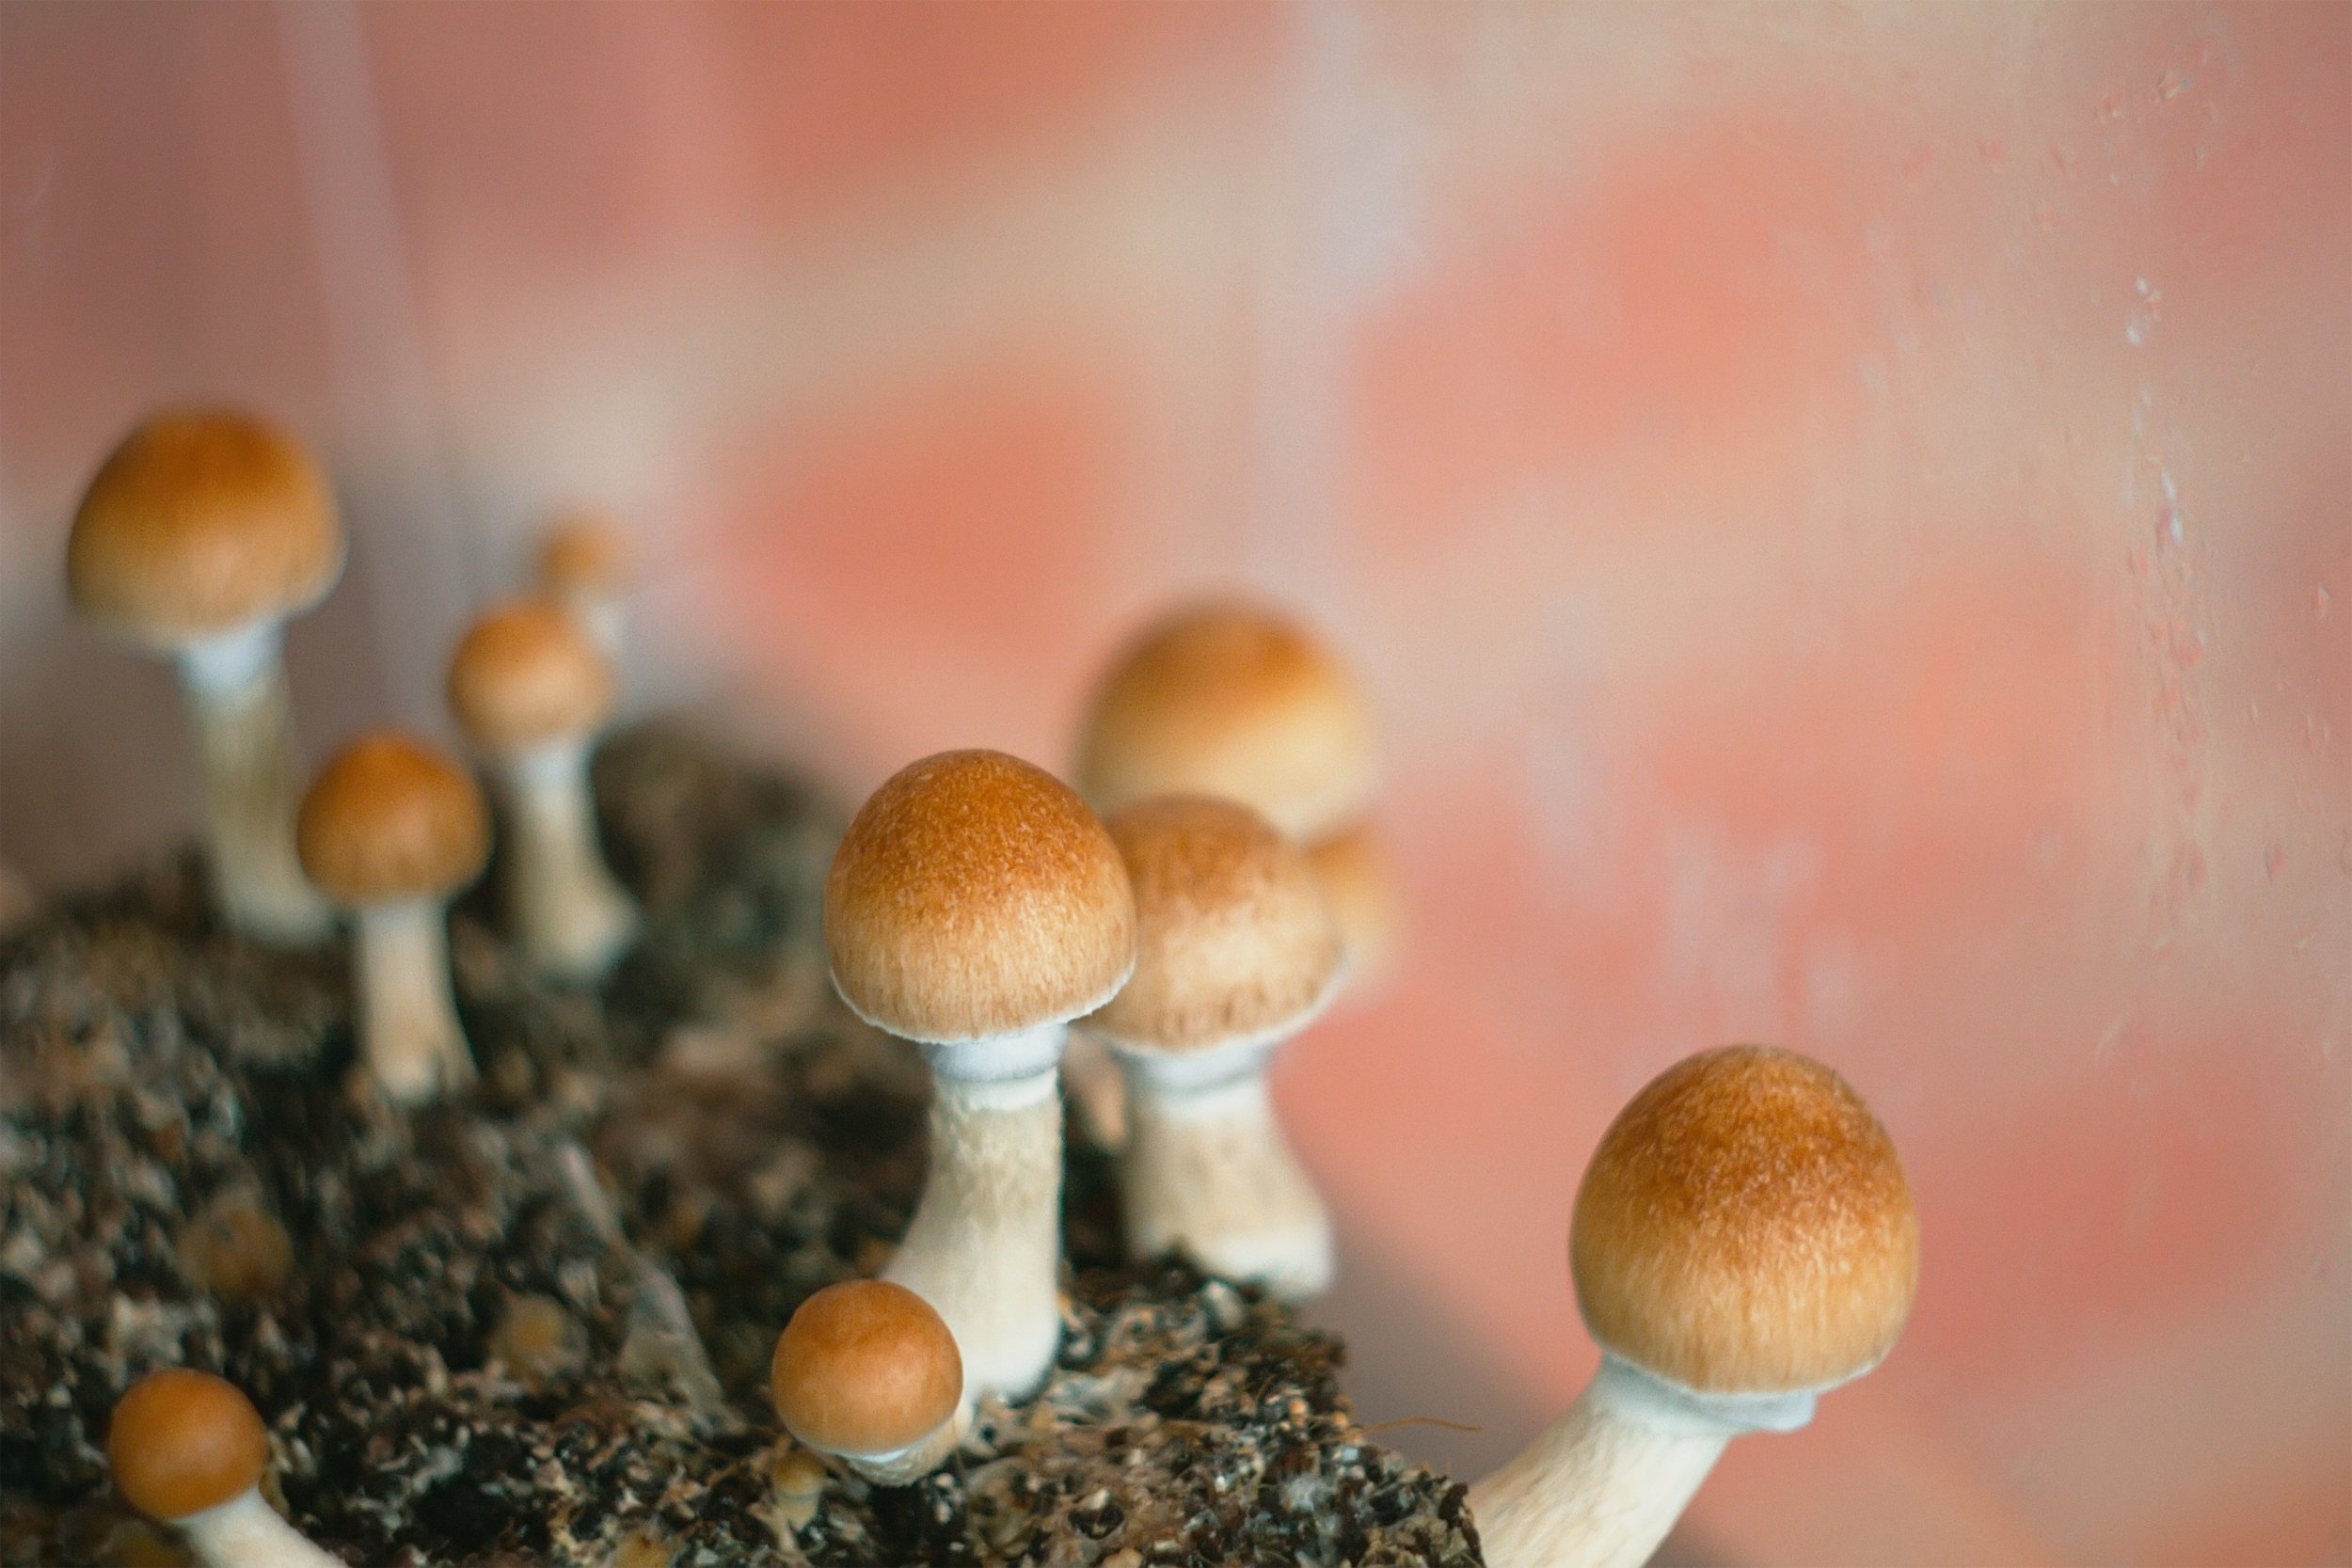 magic mushrooms psilocybin Cubensis getty stock